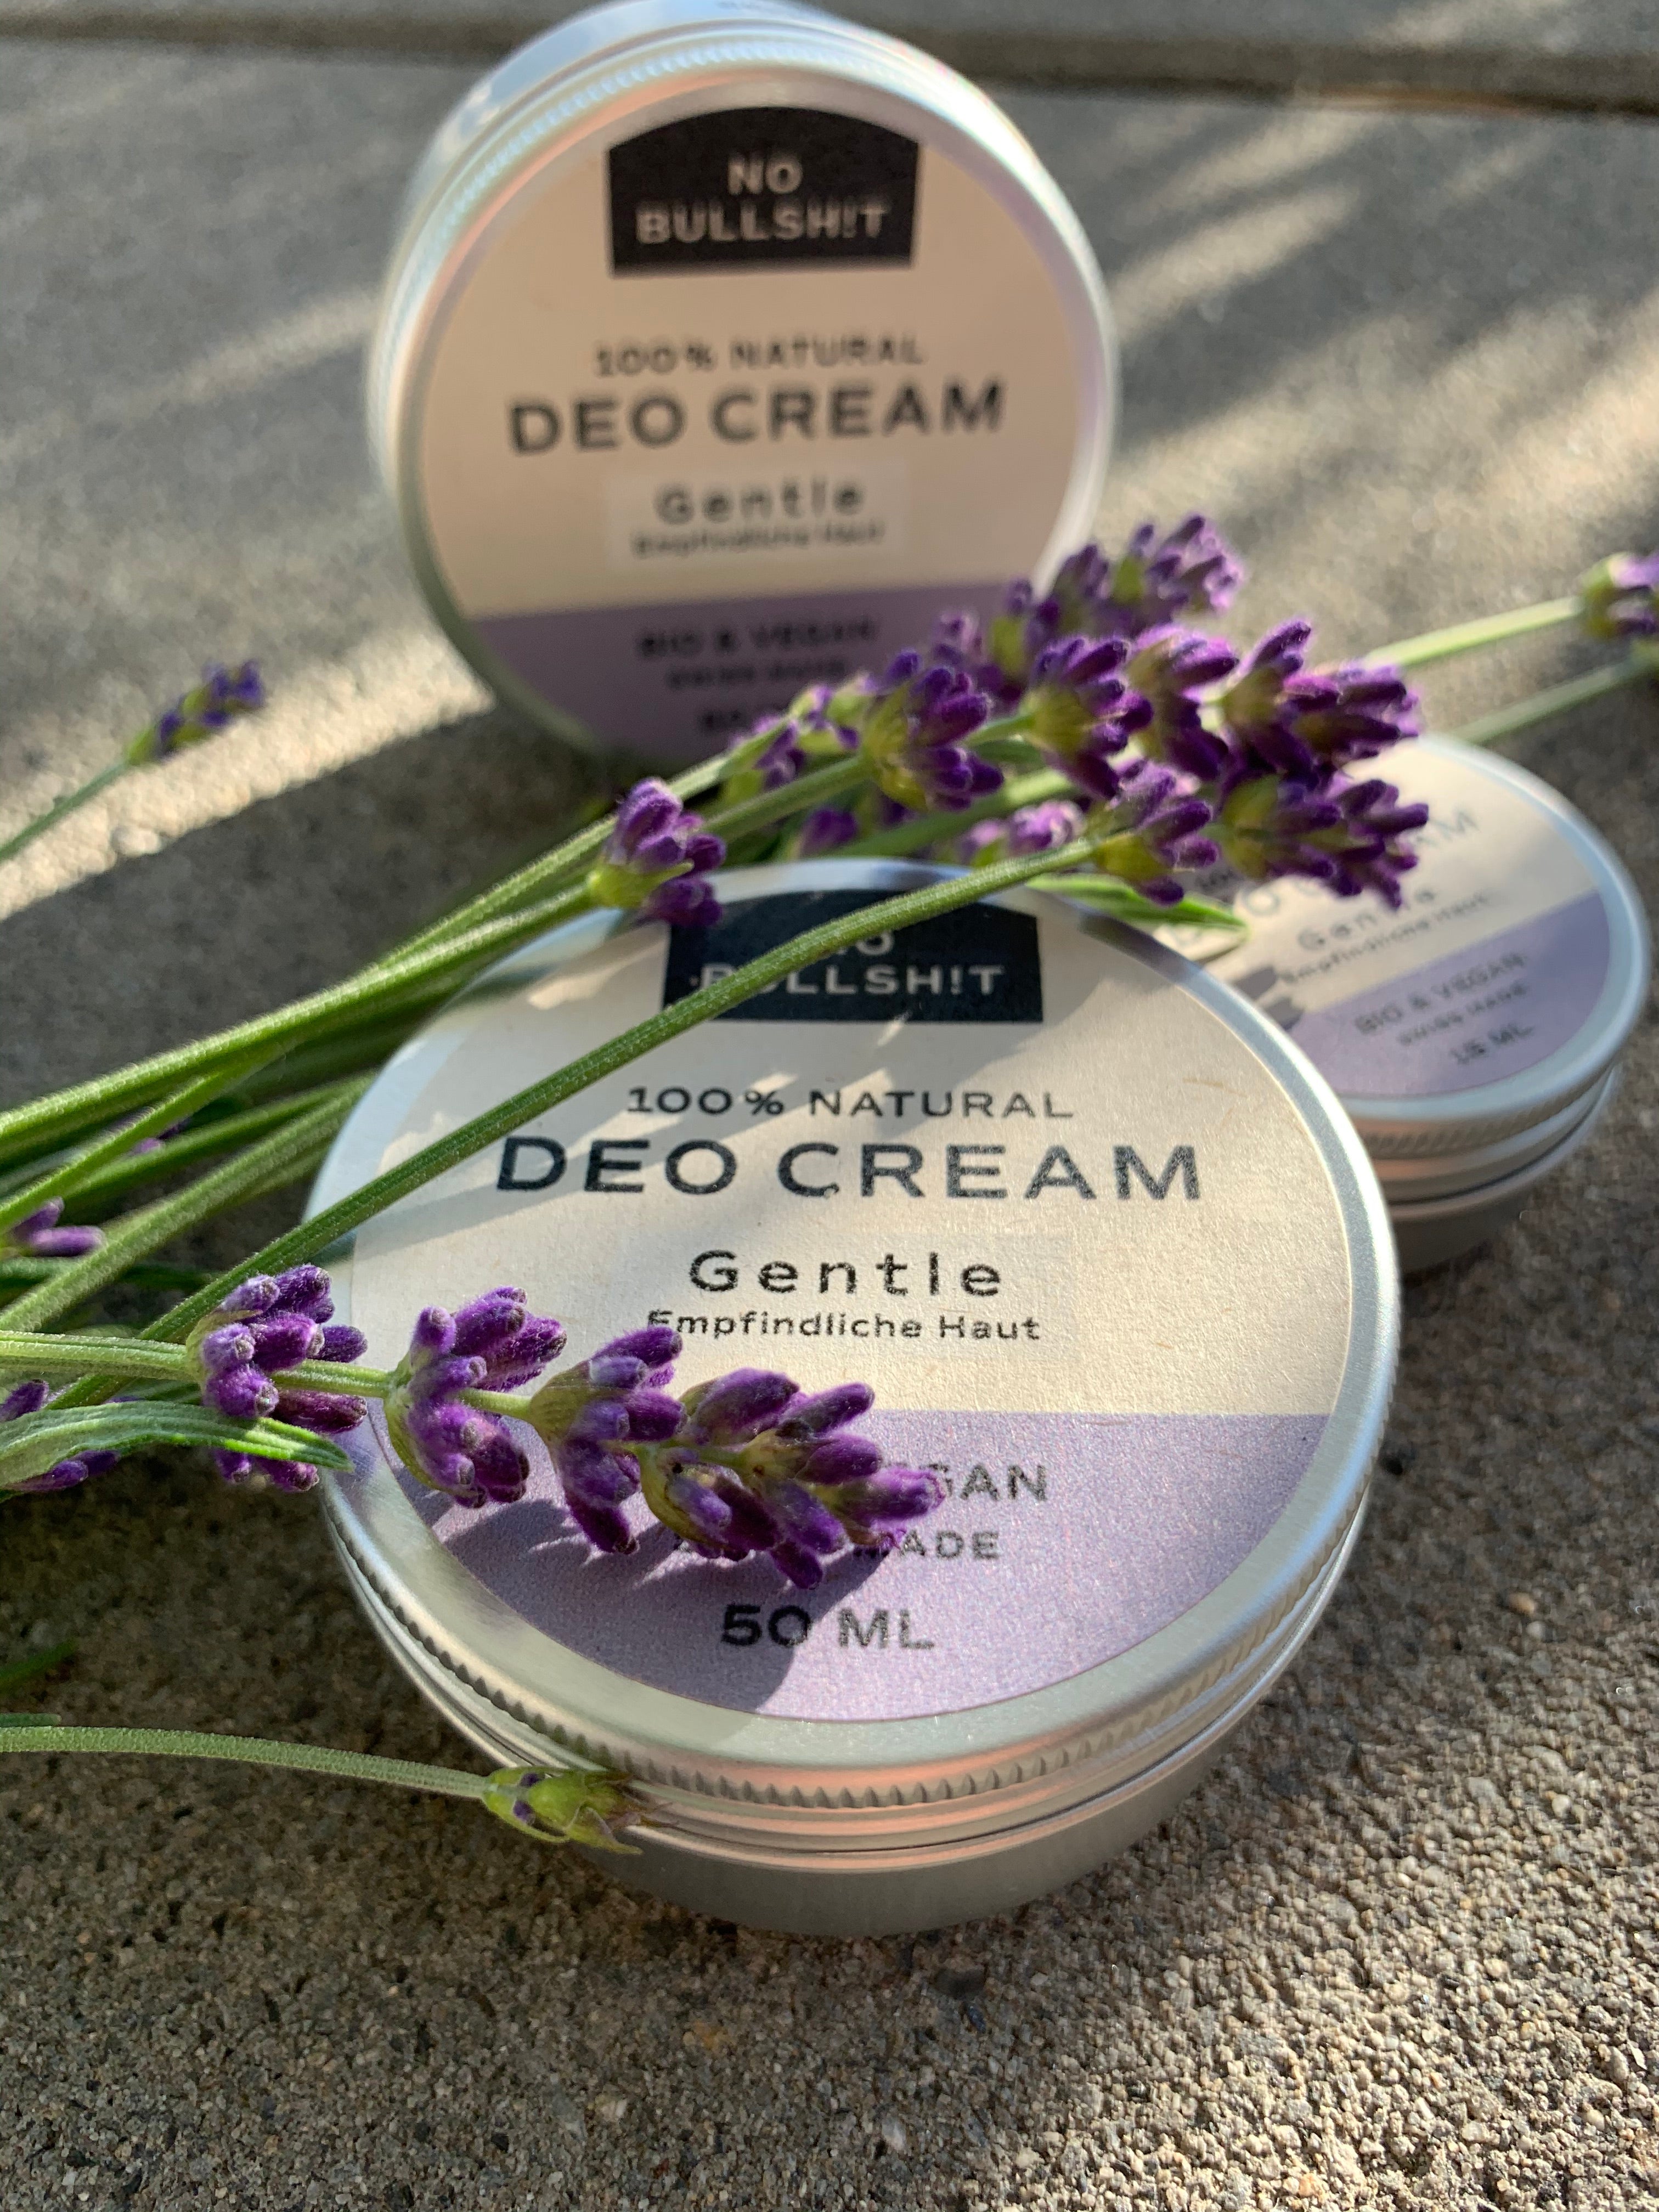 Die neue Deo Cream Gentle für empfindliche Haut